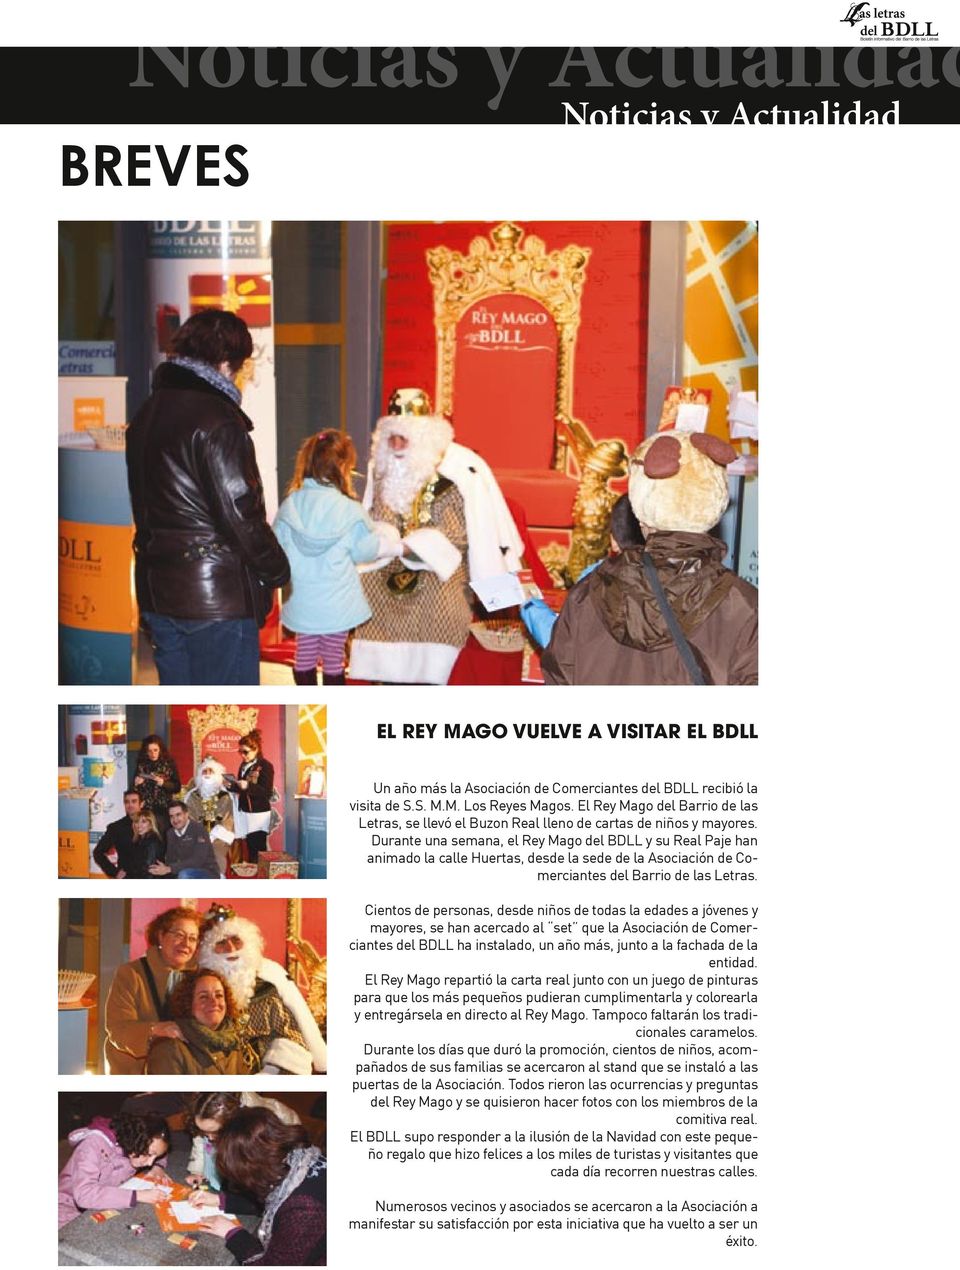 Durante una semana, el Rey Mago del BDLL y su Real Paje han animado la calle Huertas, desde la sede de la Asociación de Comerciantes del Barrio de las Letras.